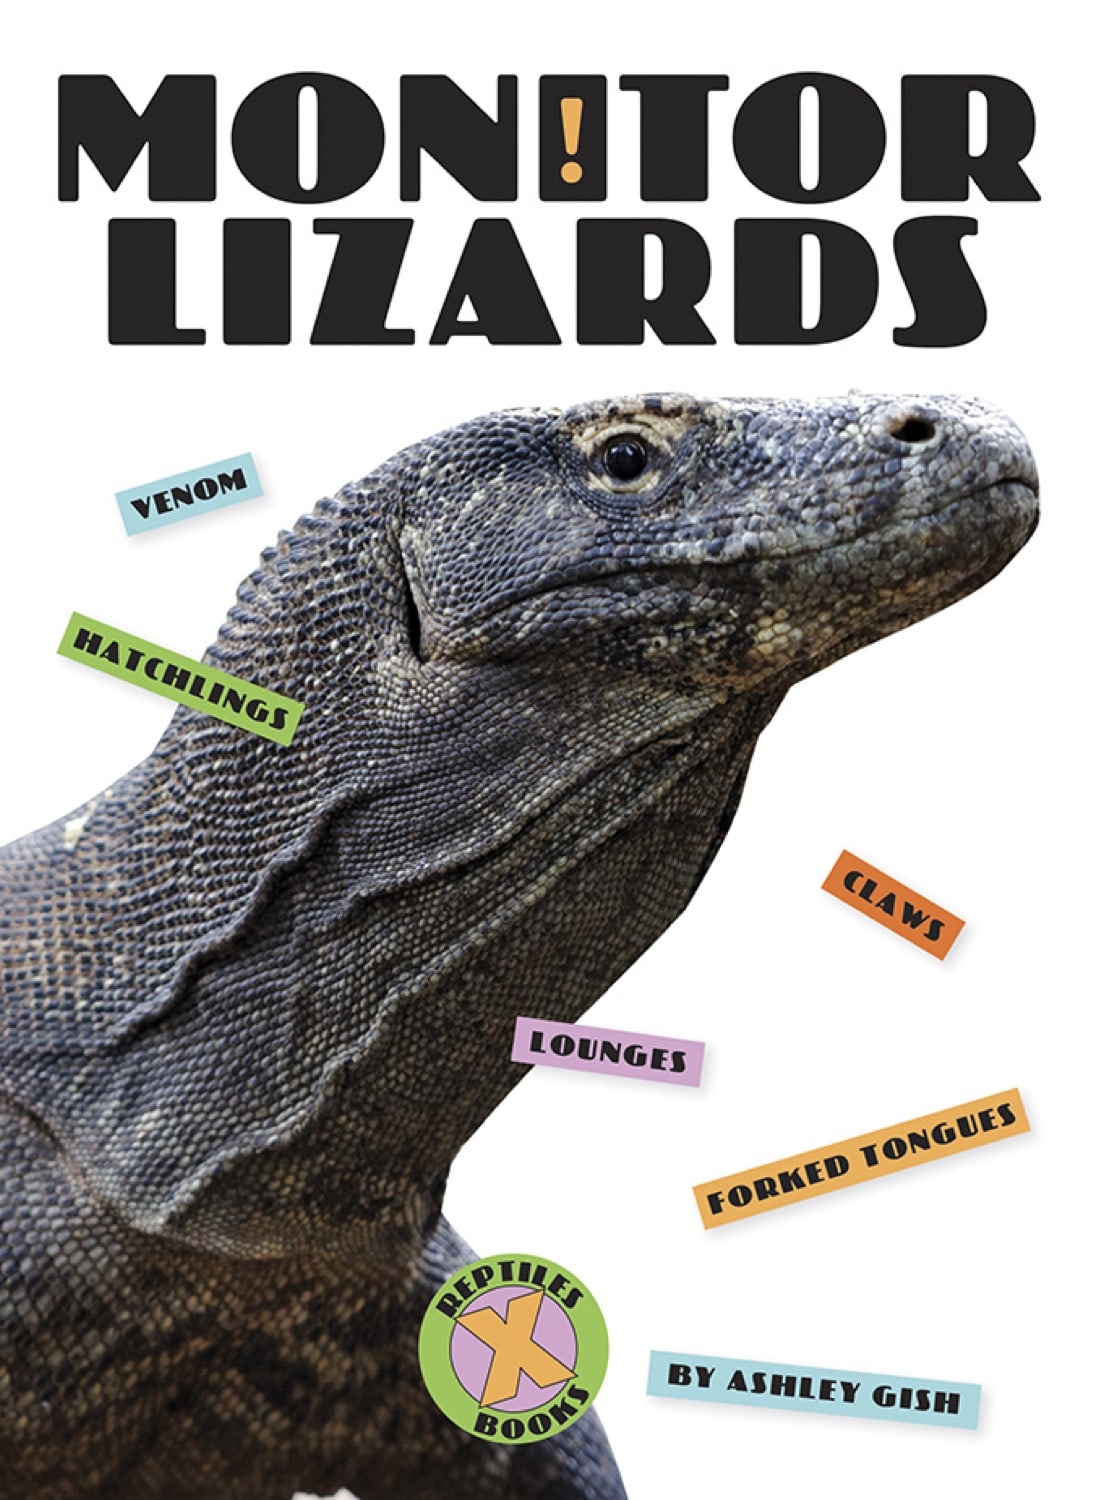 X-Books: Reptiles: Monitor Lizards